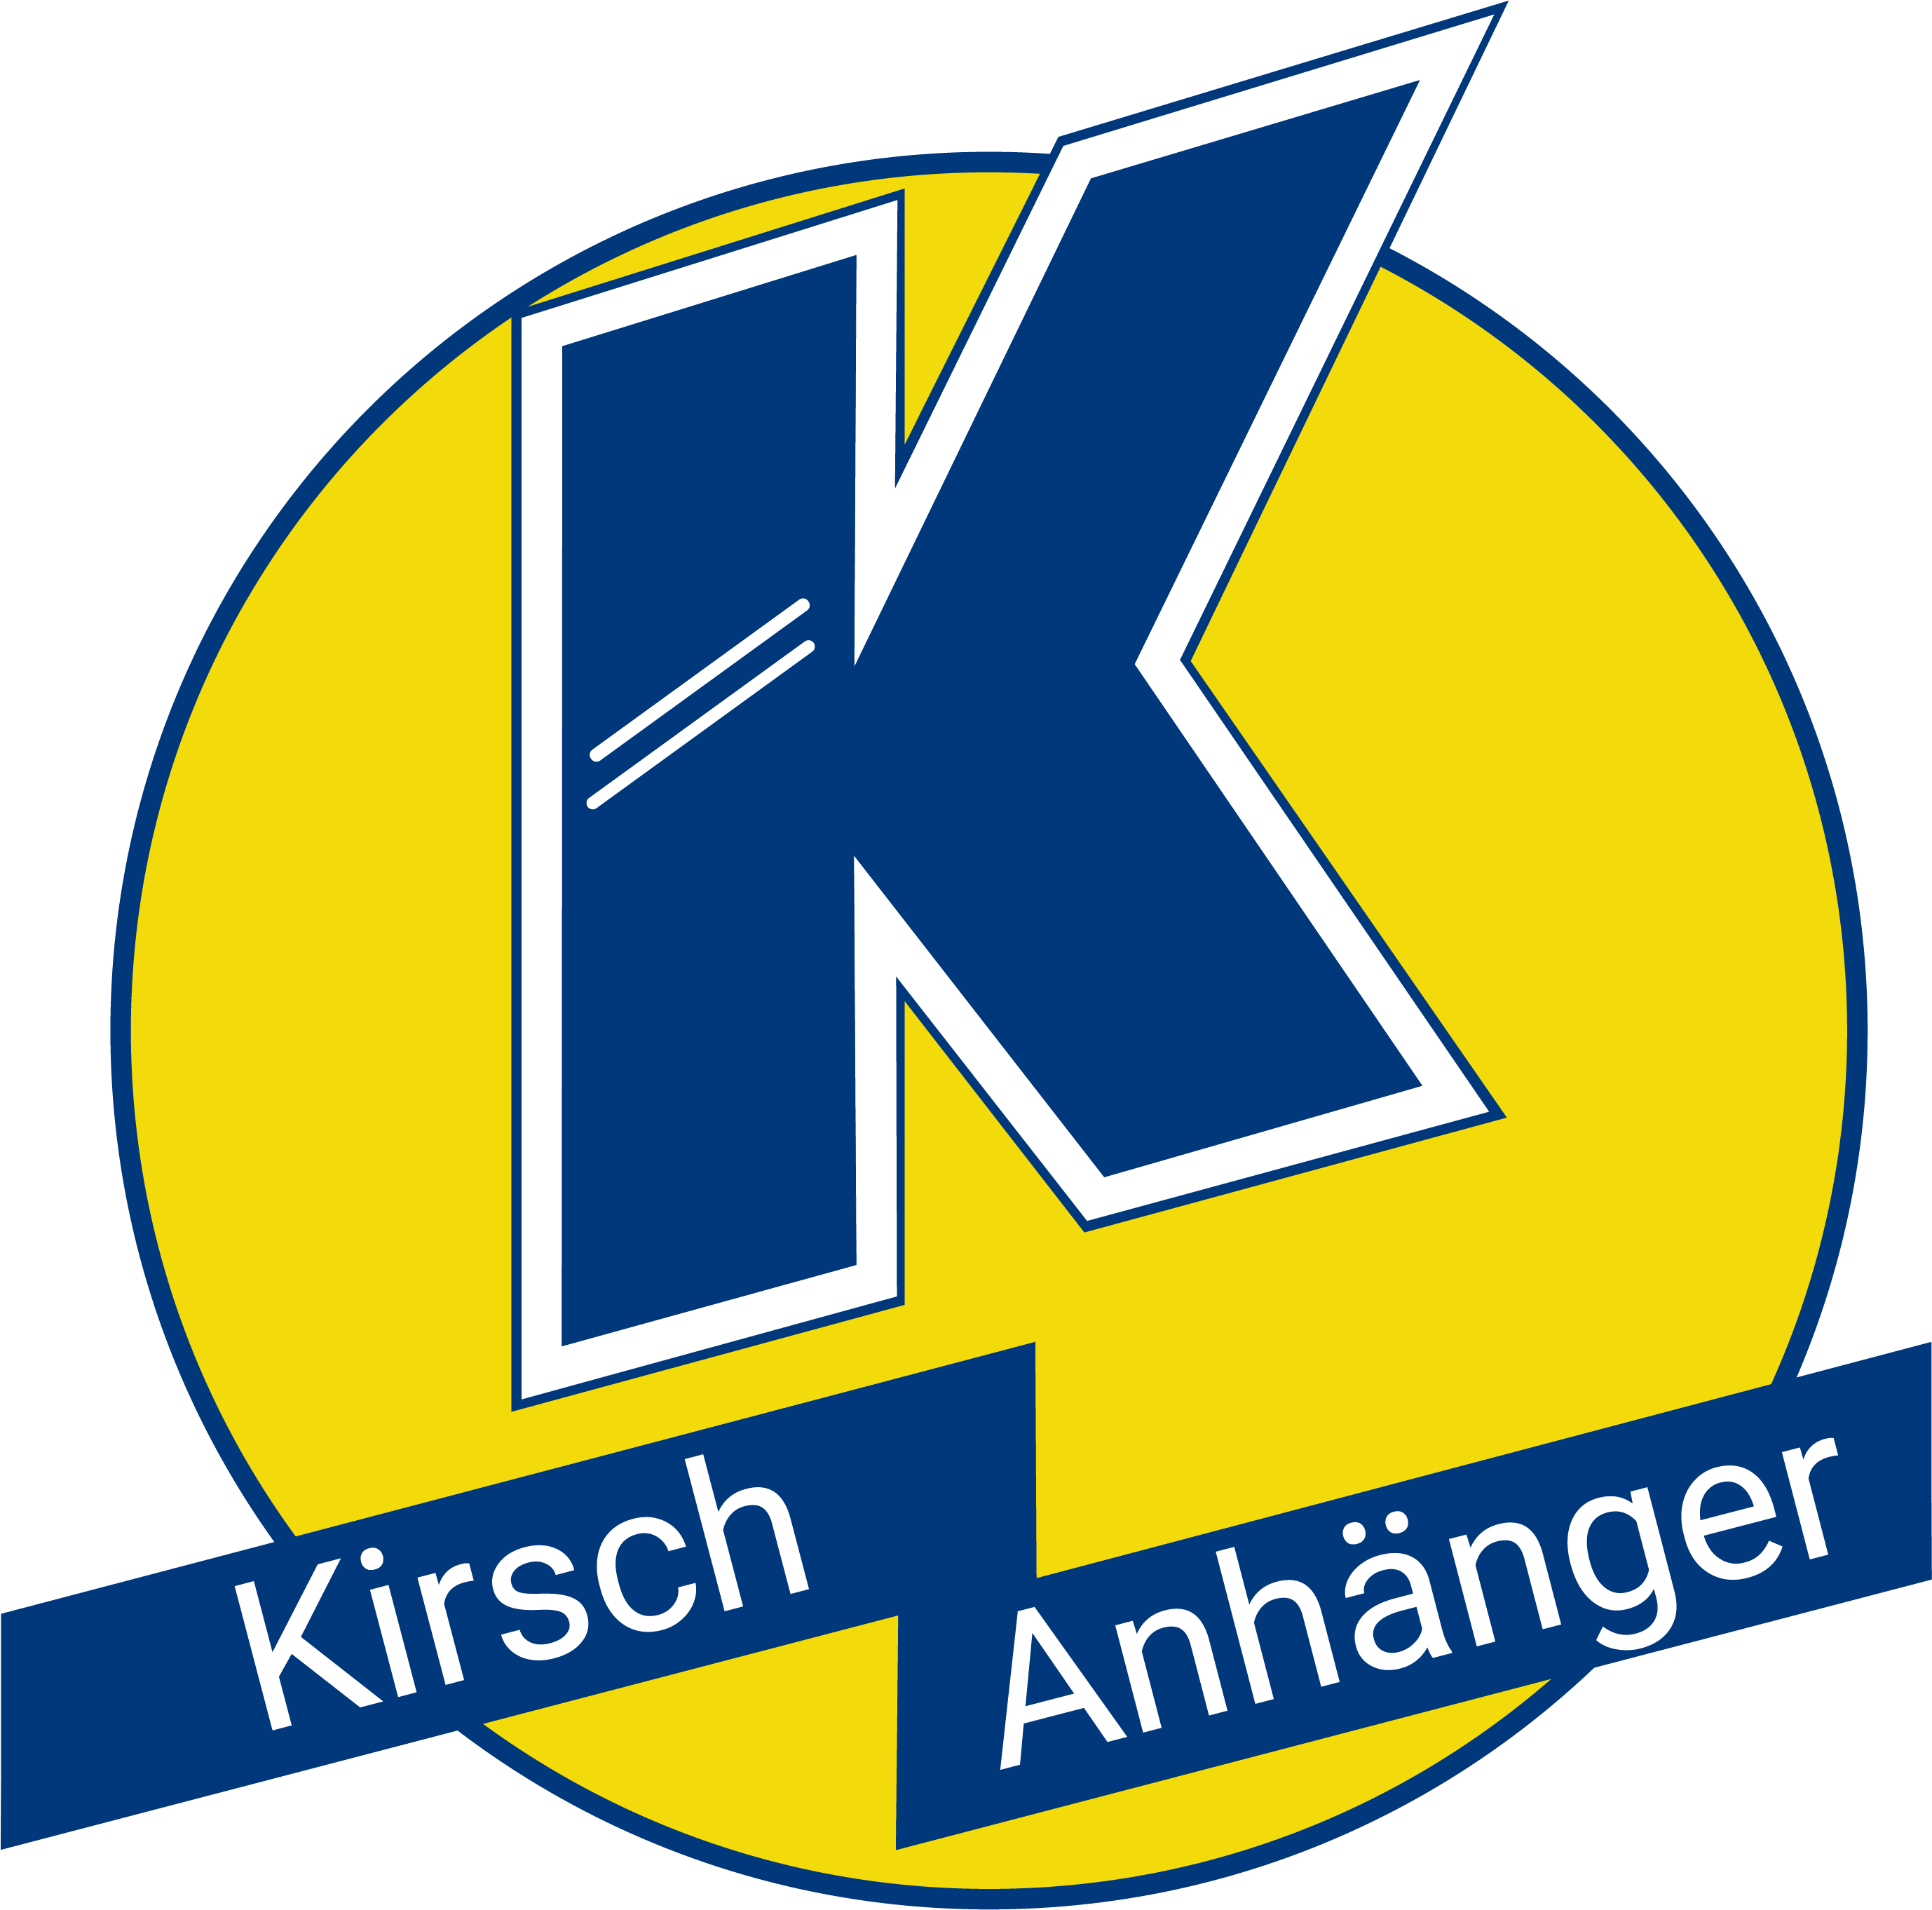 (c) Kirsch-anhaenger.de